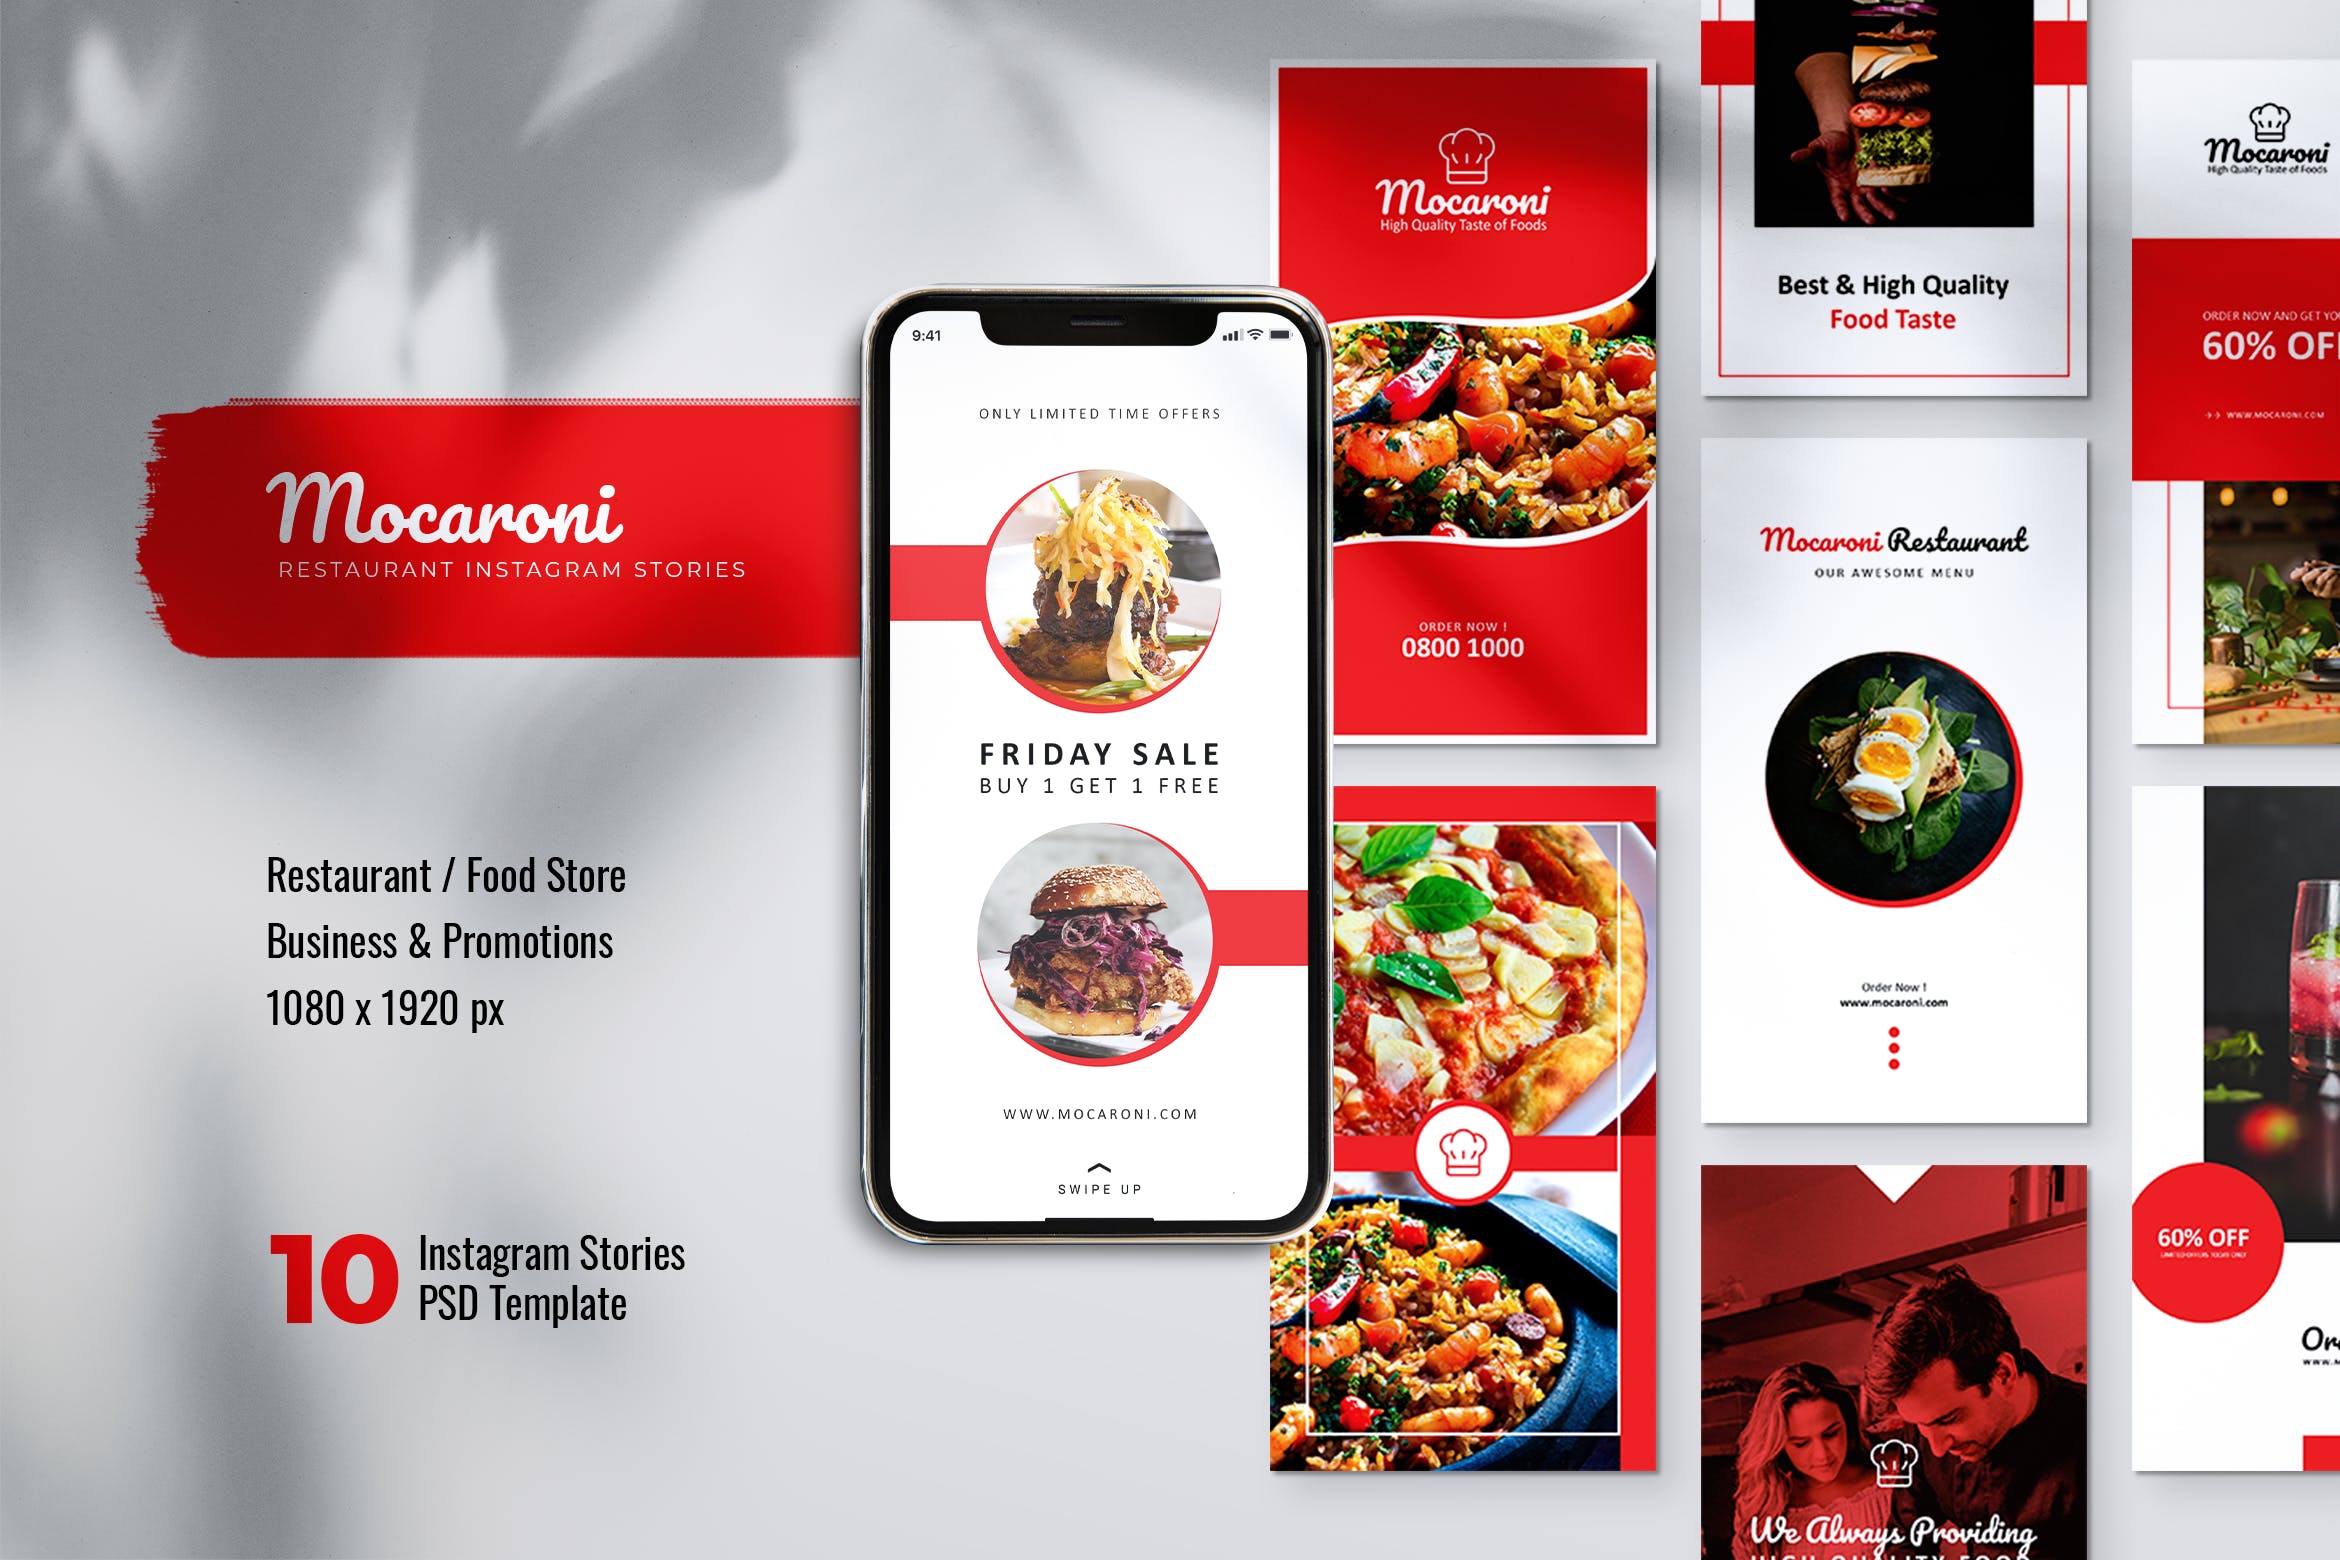 餐馆美食主题Instagram&Facebook社交品牌宣传图片设计PSD模板素材中国精选 MOCARONI Restaurant/Food Store Instagram Stories插图